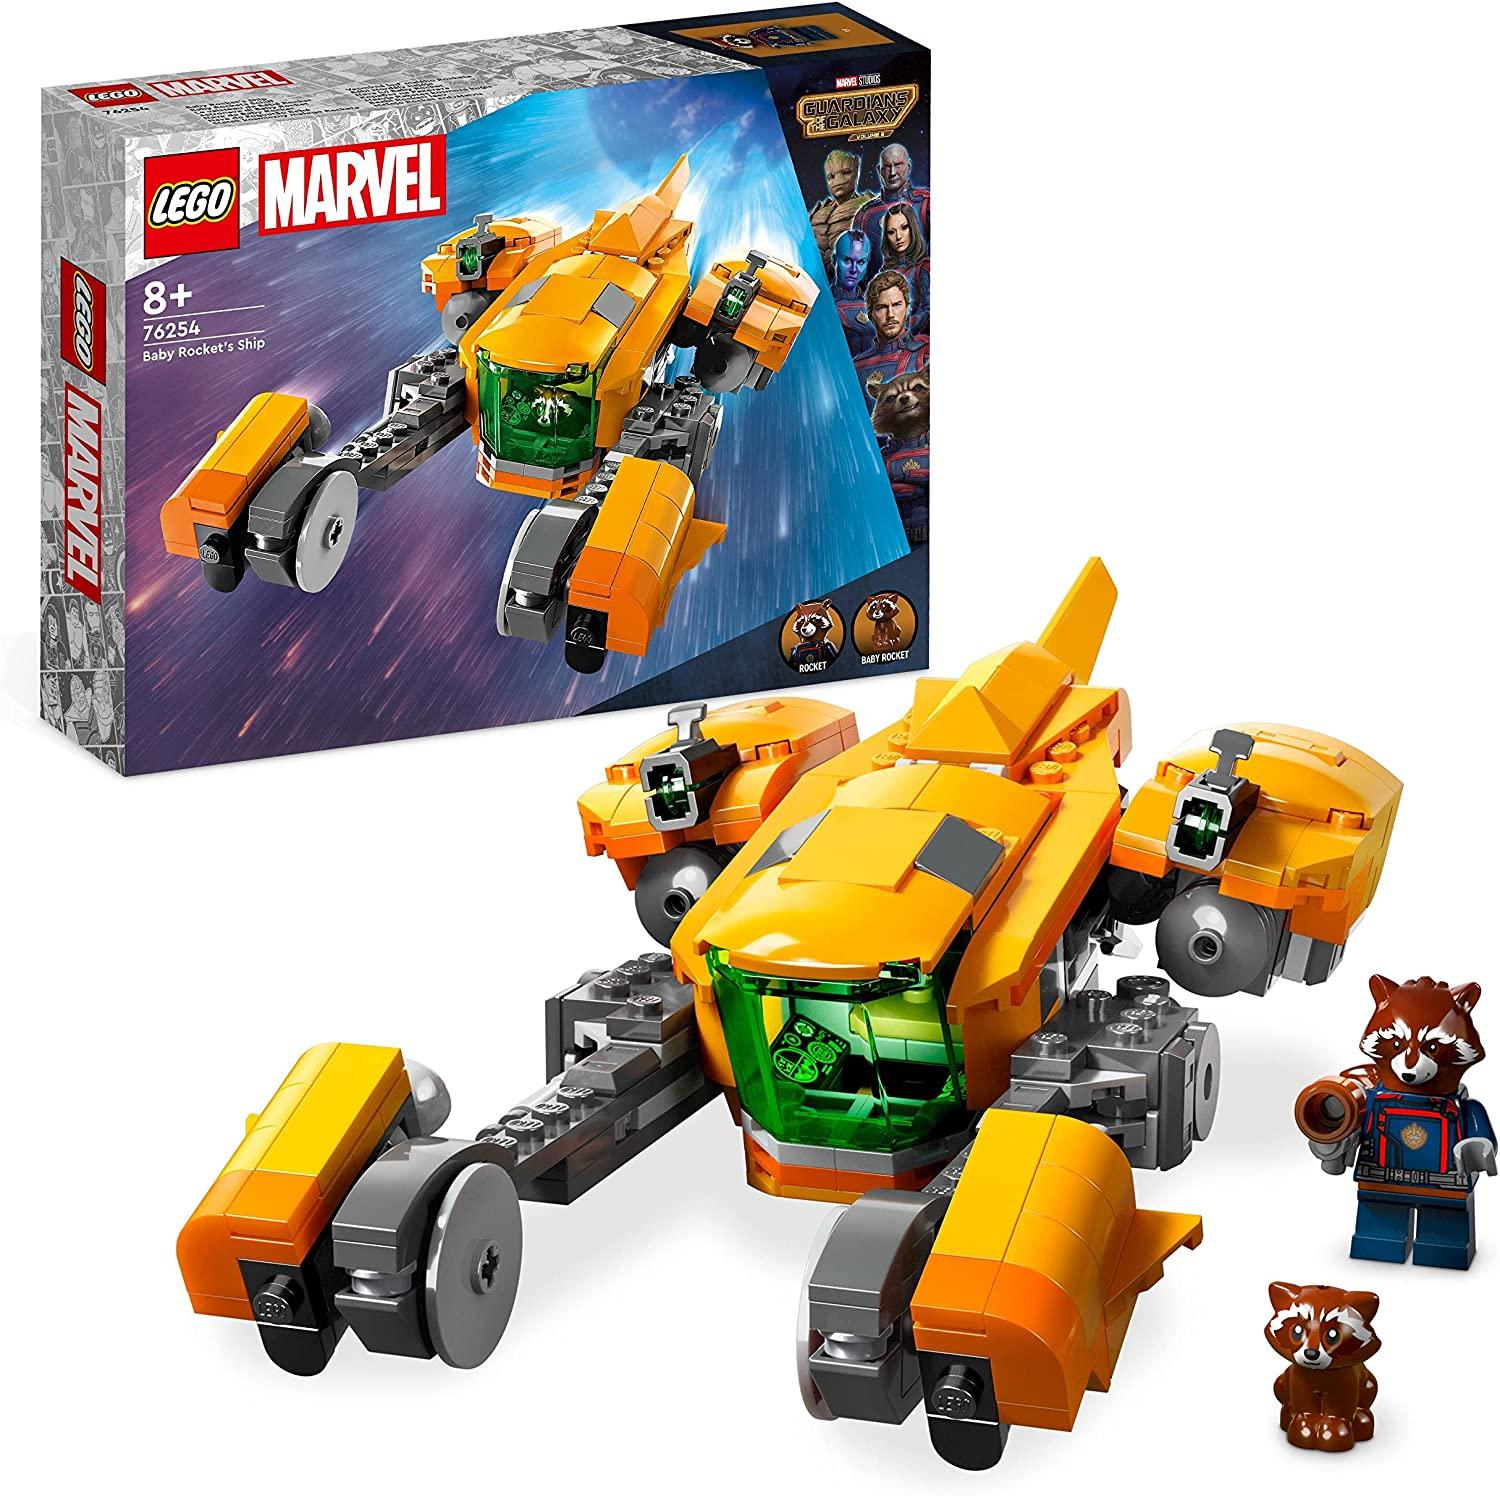 Lego Marvel 76254 - Baby Rockets Schiff